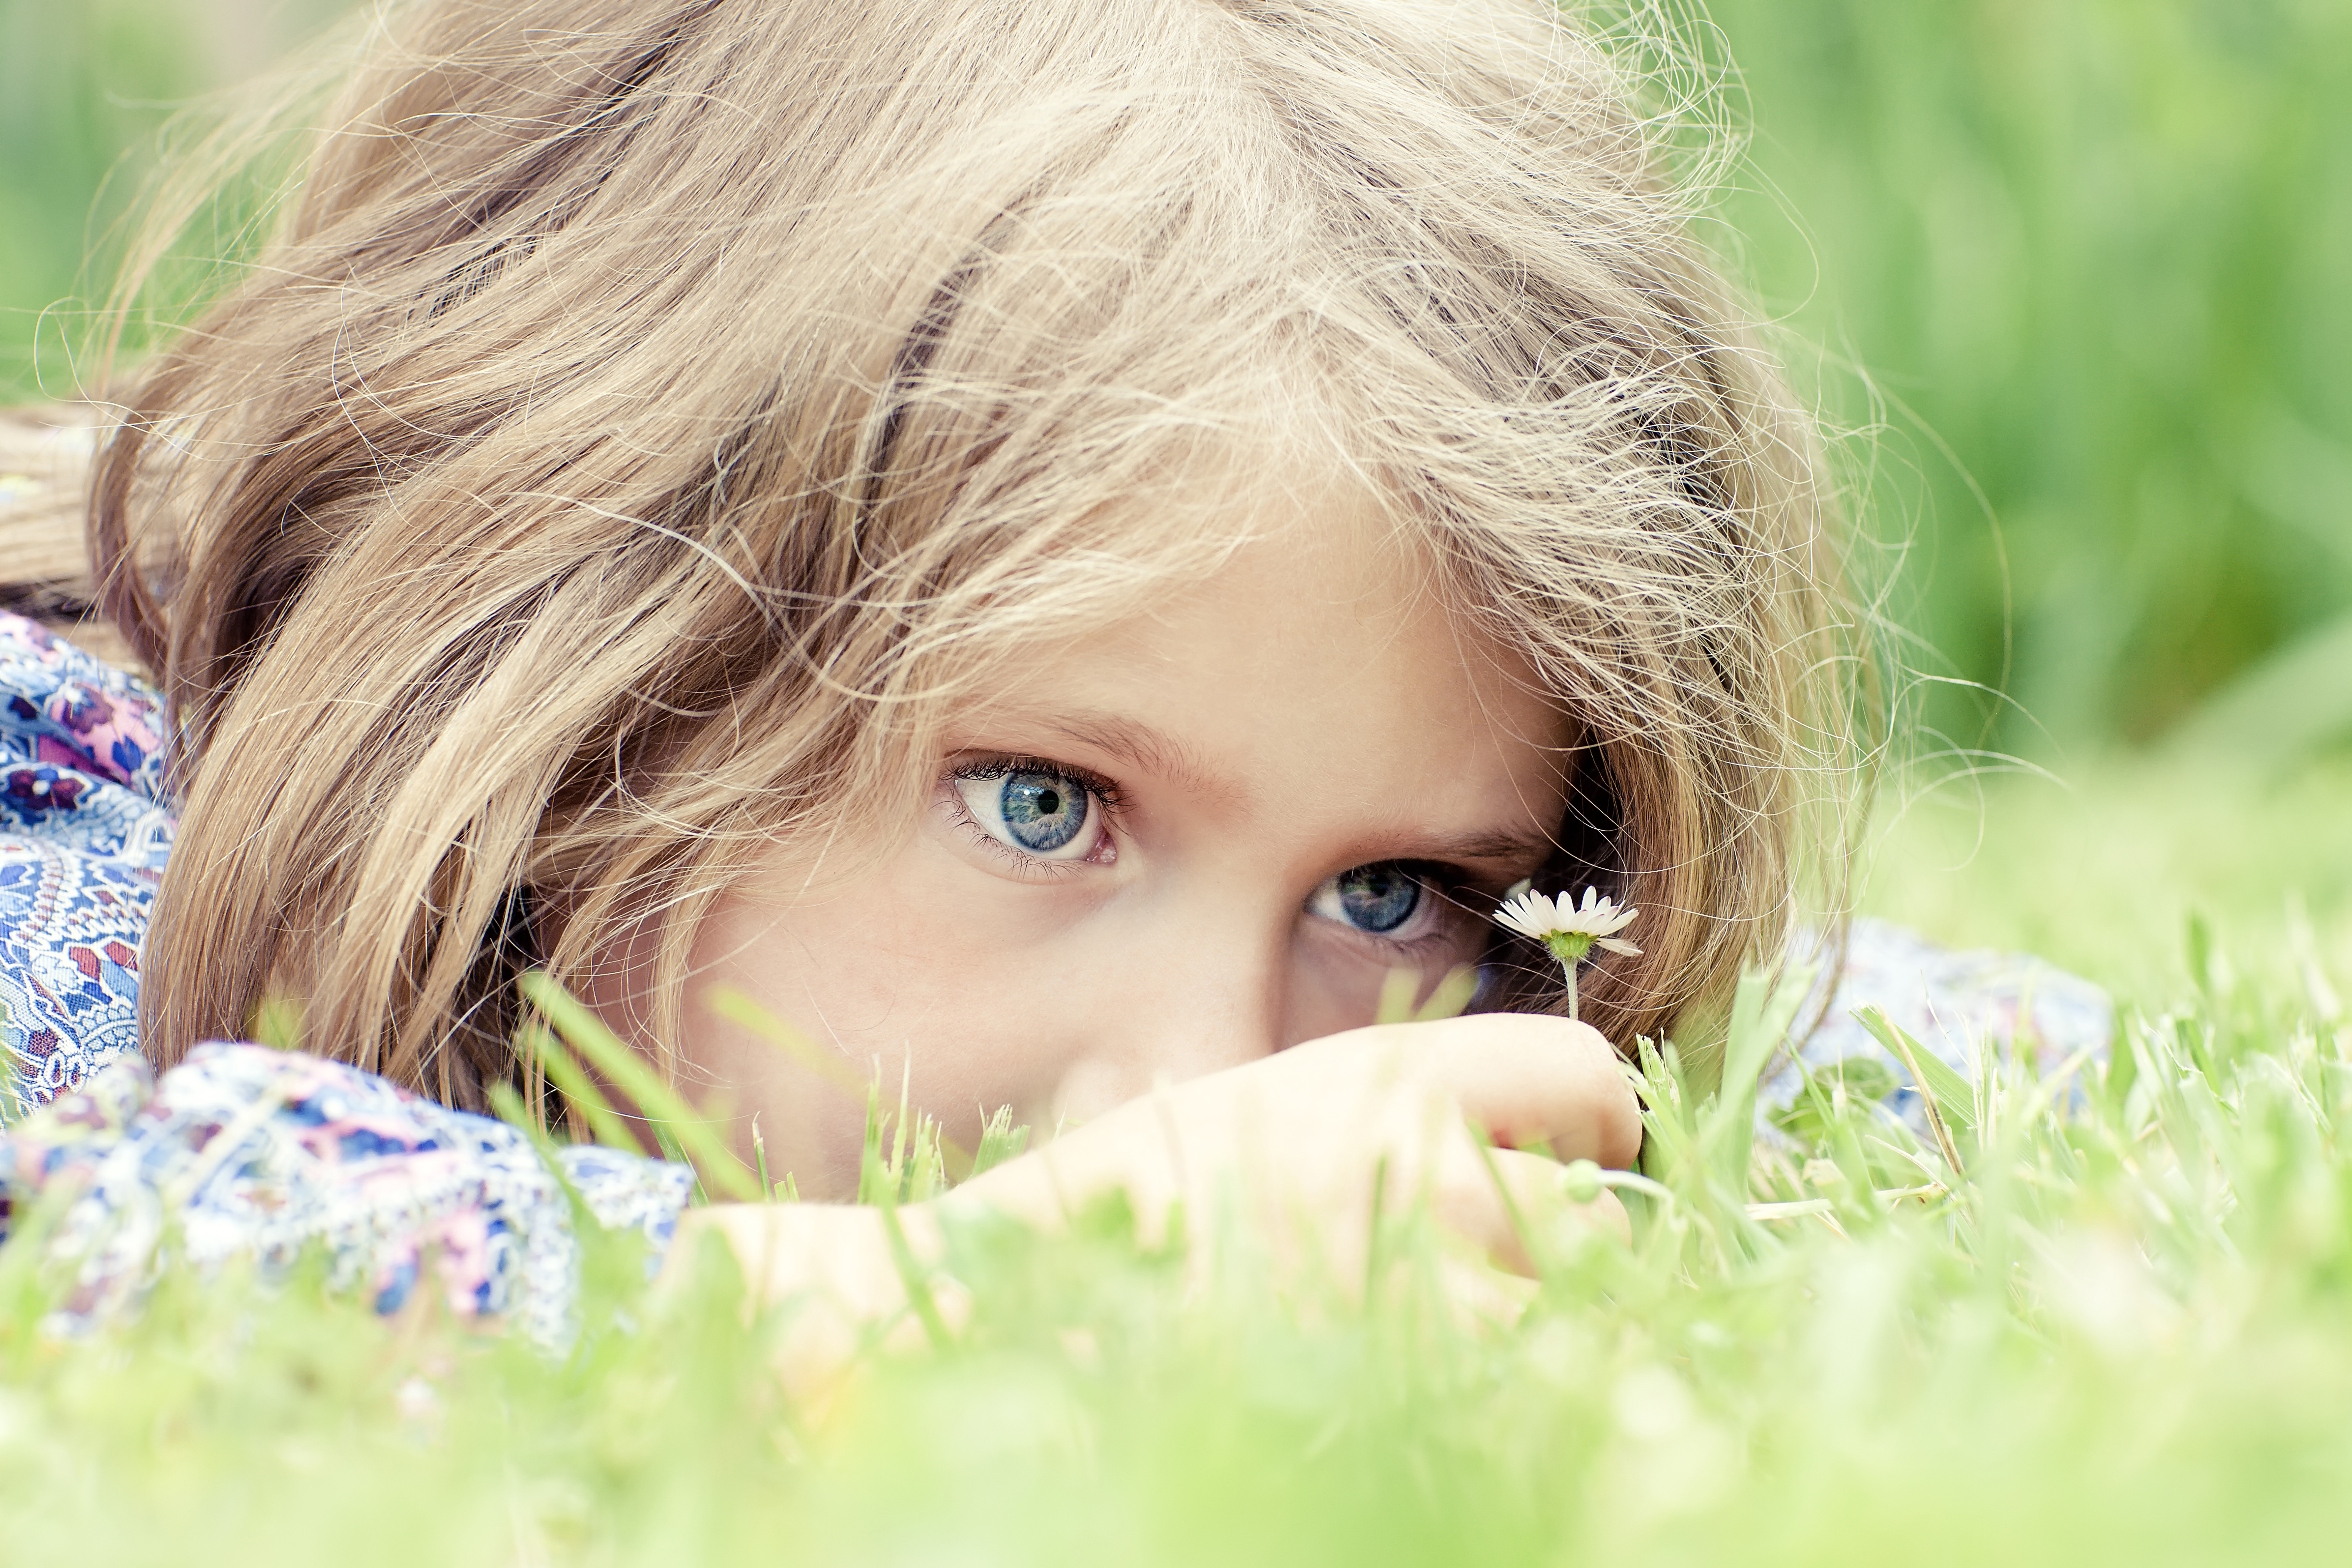 Глаза полные счастья. Дети и природа. Девочка на природе. Голубоглазая девочка. Маленькая девочка с зелеными глазами.